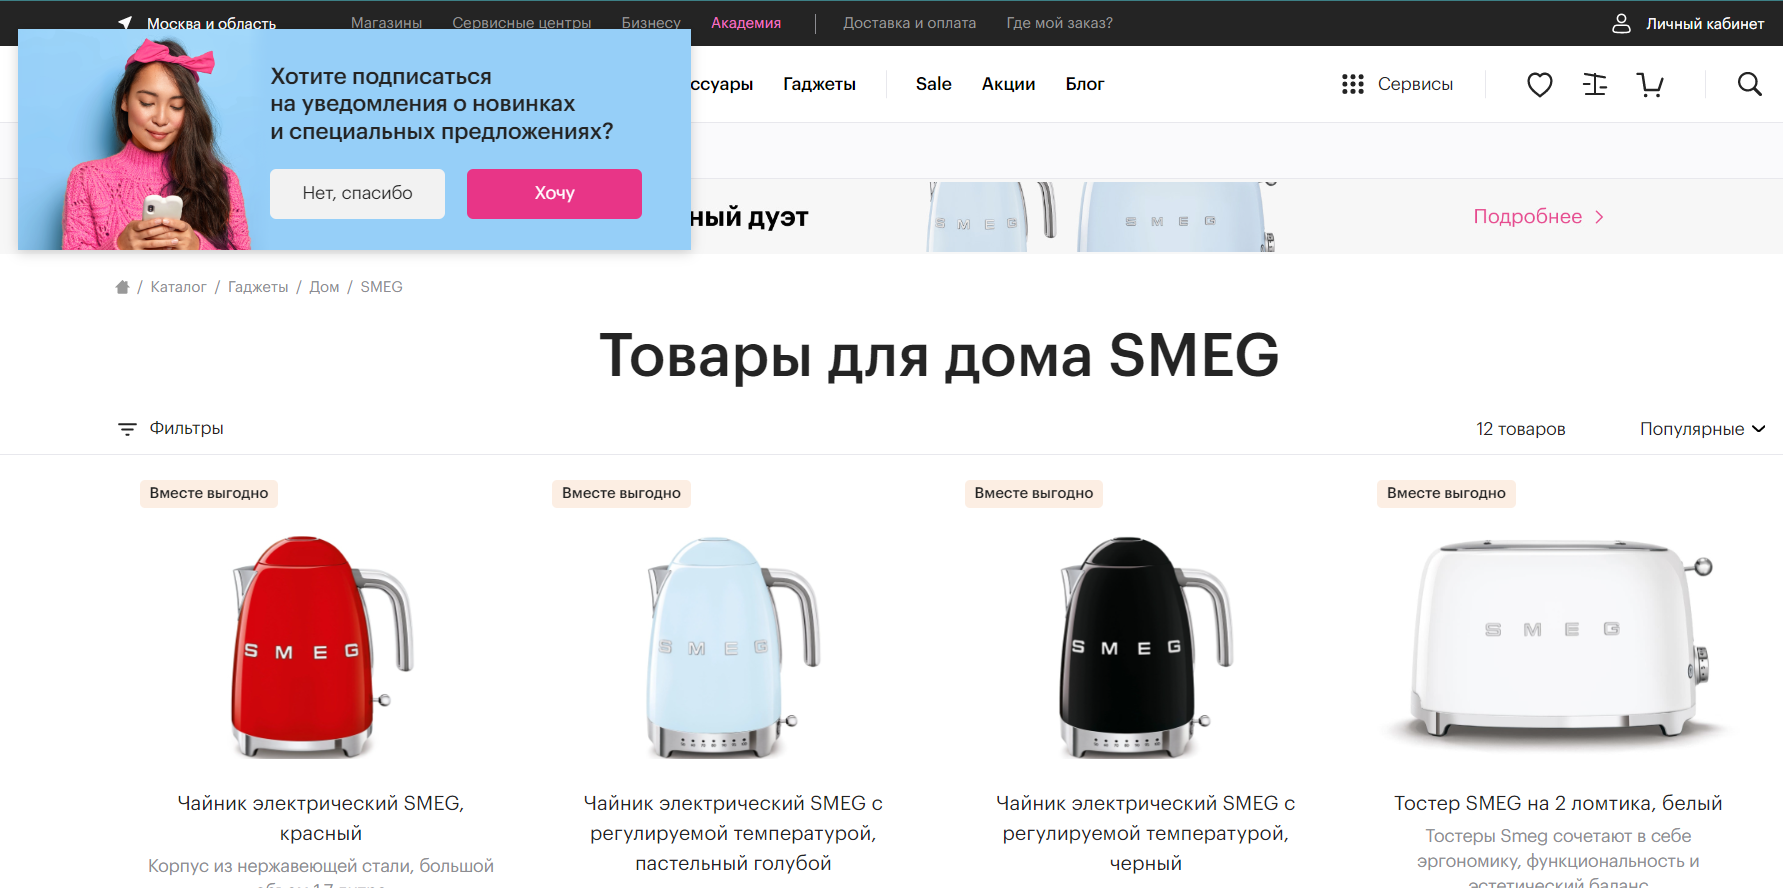 Сайт re-store.ru использует web push-уведомлления